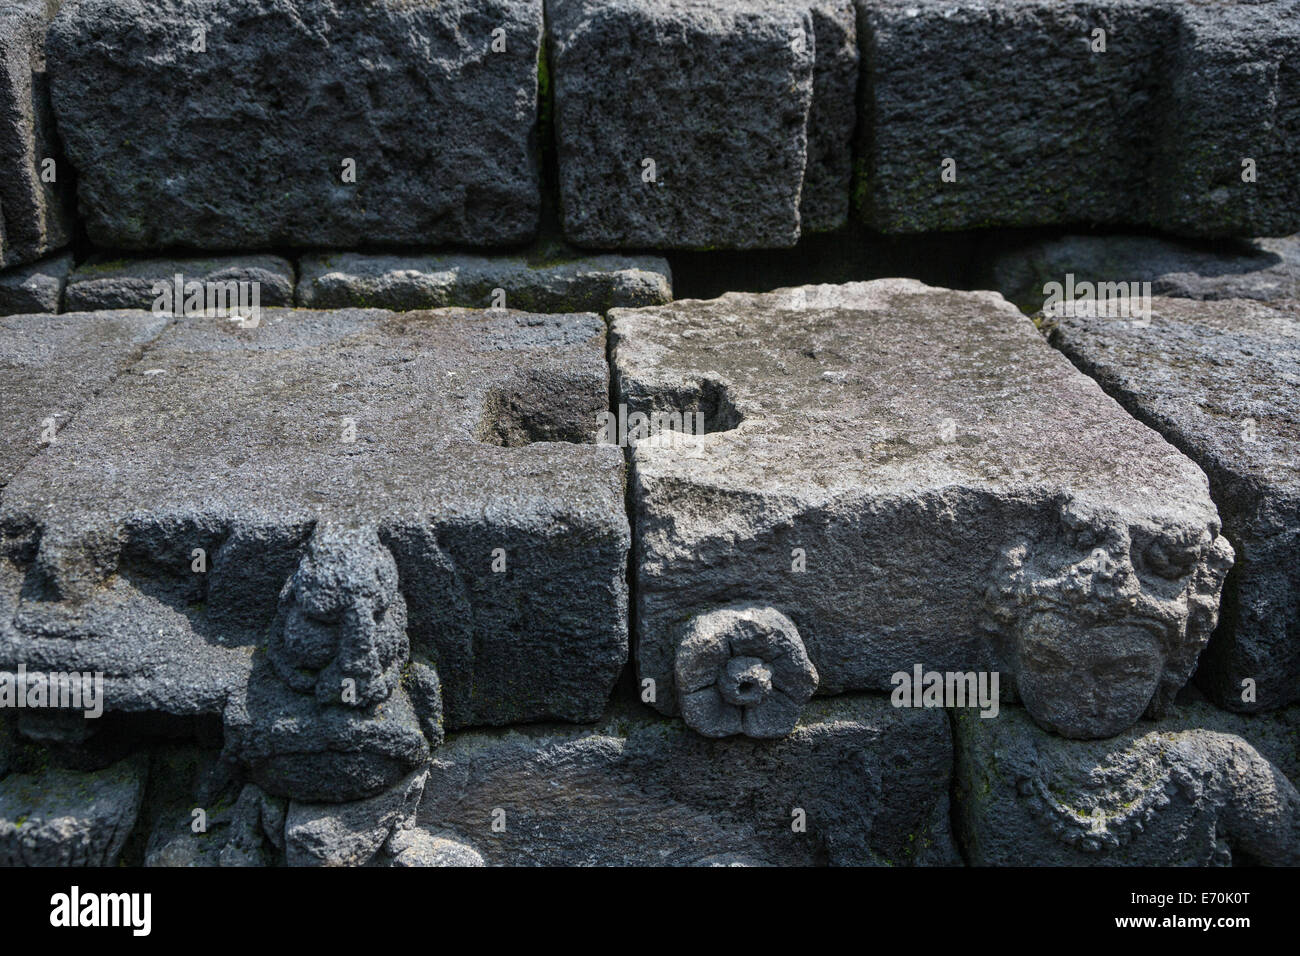 Borobudur, Java, Indonesien.  Bautechnik.  Steinen Schnitt um anderen ineinandergreifenden Steinen zu erhalten. Stockfoto